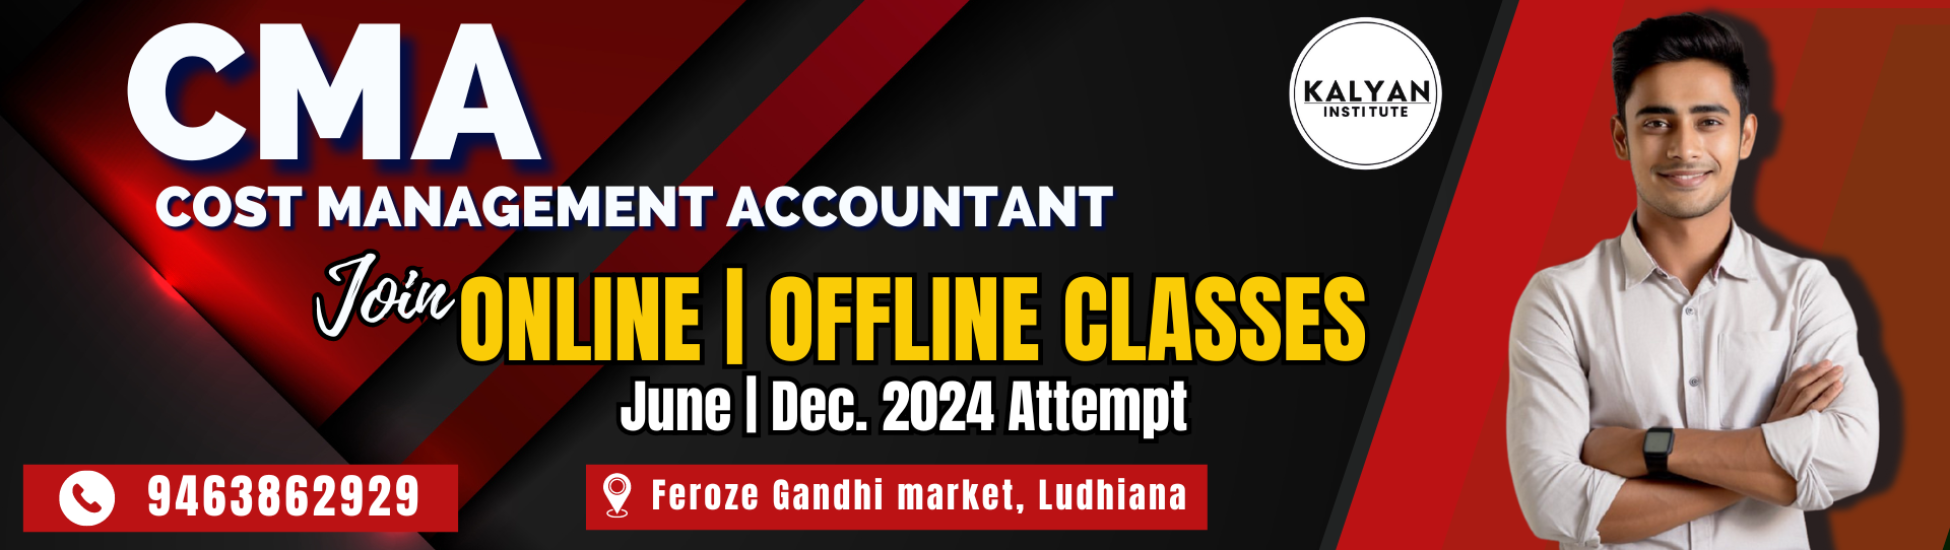 CMA Online | Offline classes by Kalyan Institute